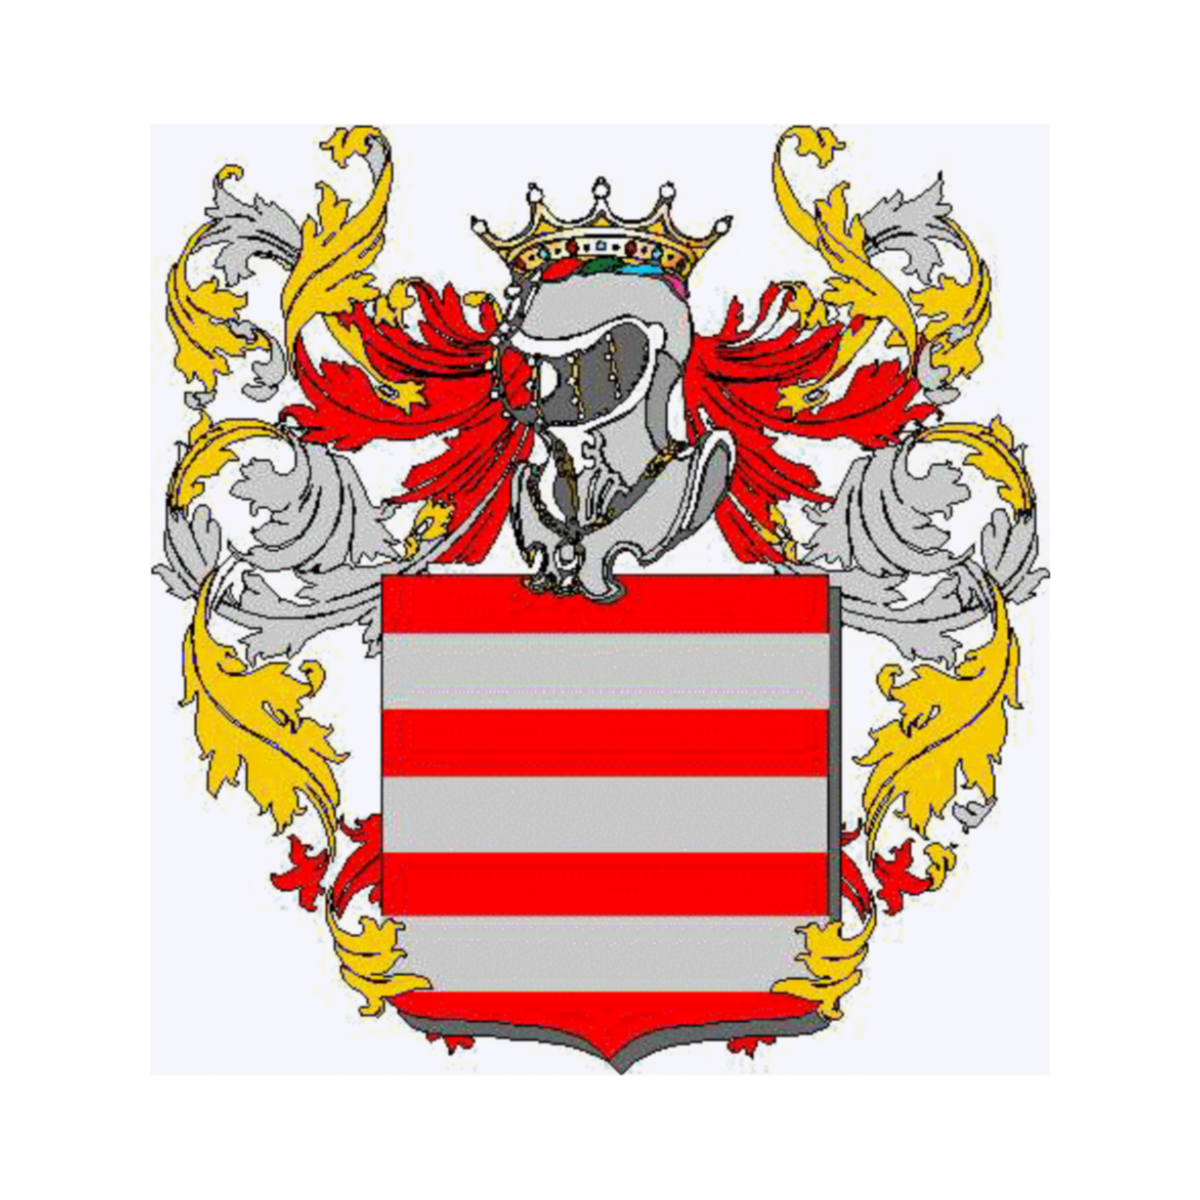 Wappen der Familie, Spazza,Spazza Canali,Spazzacanale,Spazzacanali